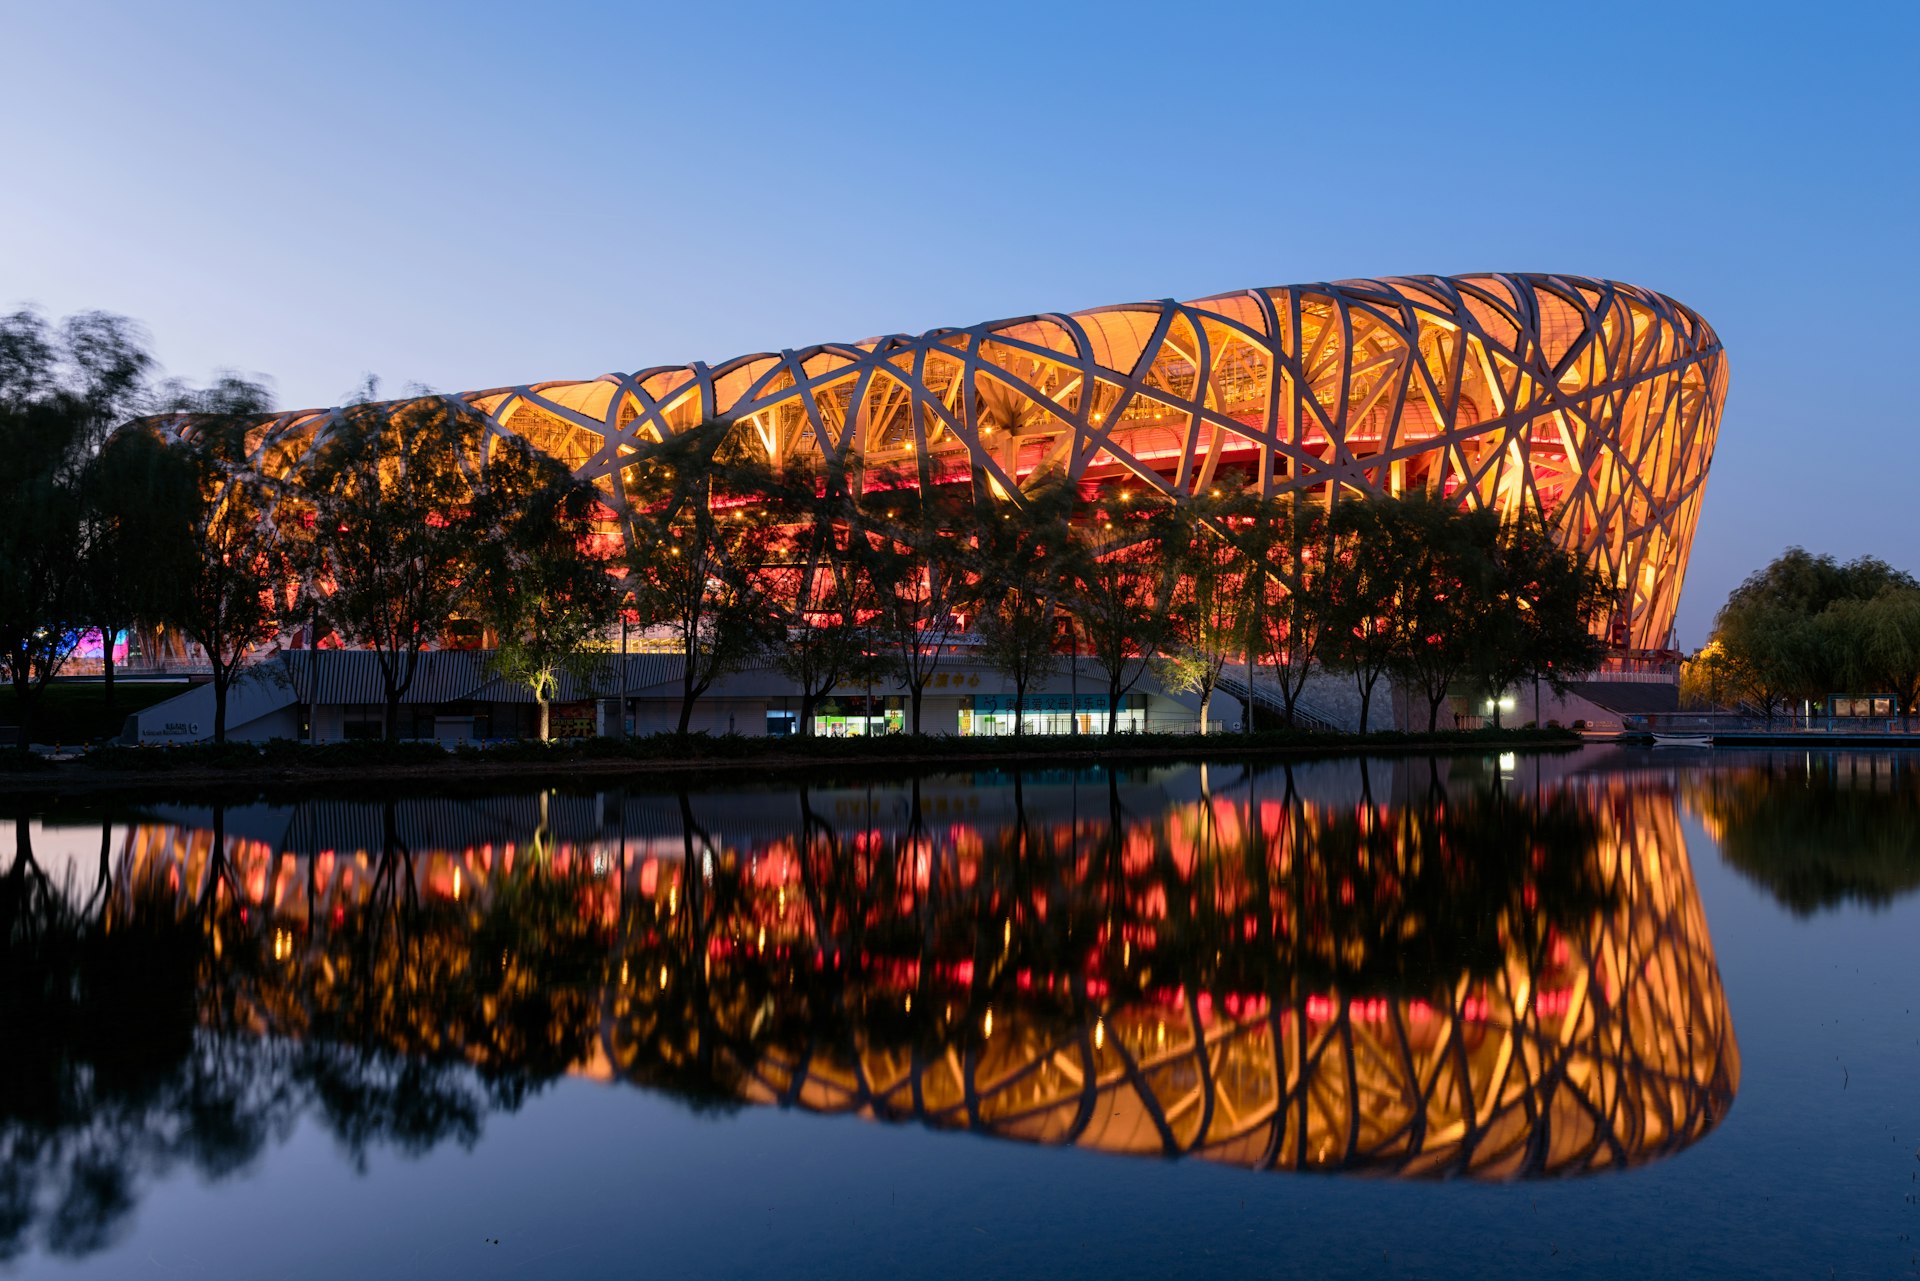 The National Stadium (“Bird’s Nest”) at night, Beijing, China